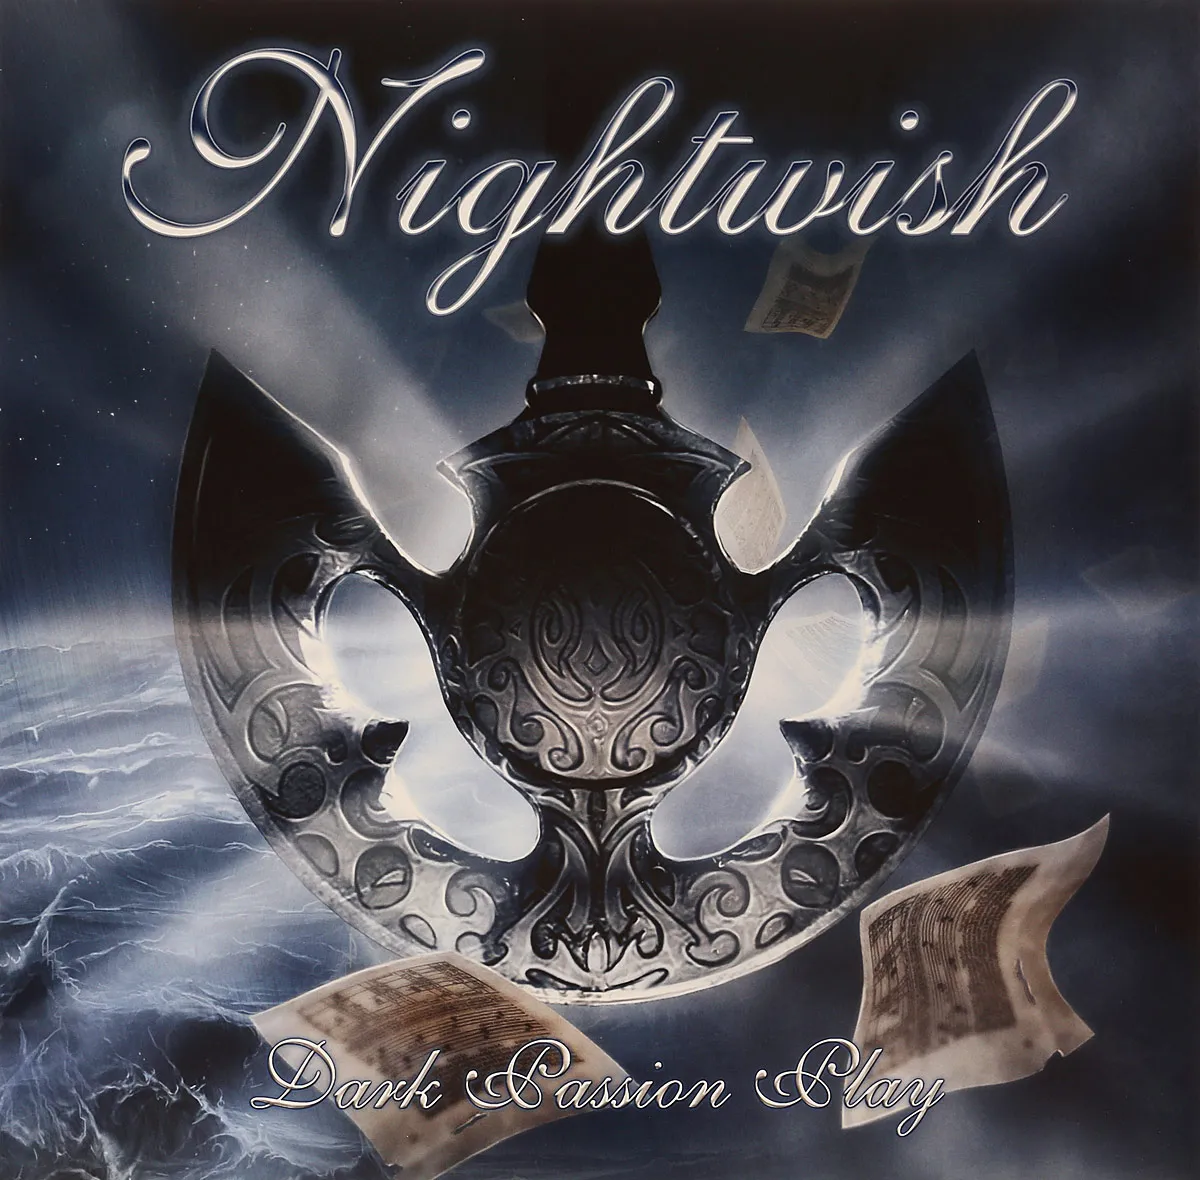 Металл Nuclear Blast Nightwish - Dark Passion Play (180 Gram Black Vinyl 2LP) металл nuclear blast nightwish human nature limited ed 3lp